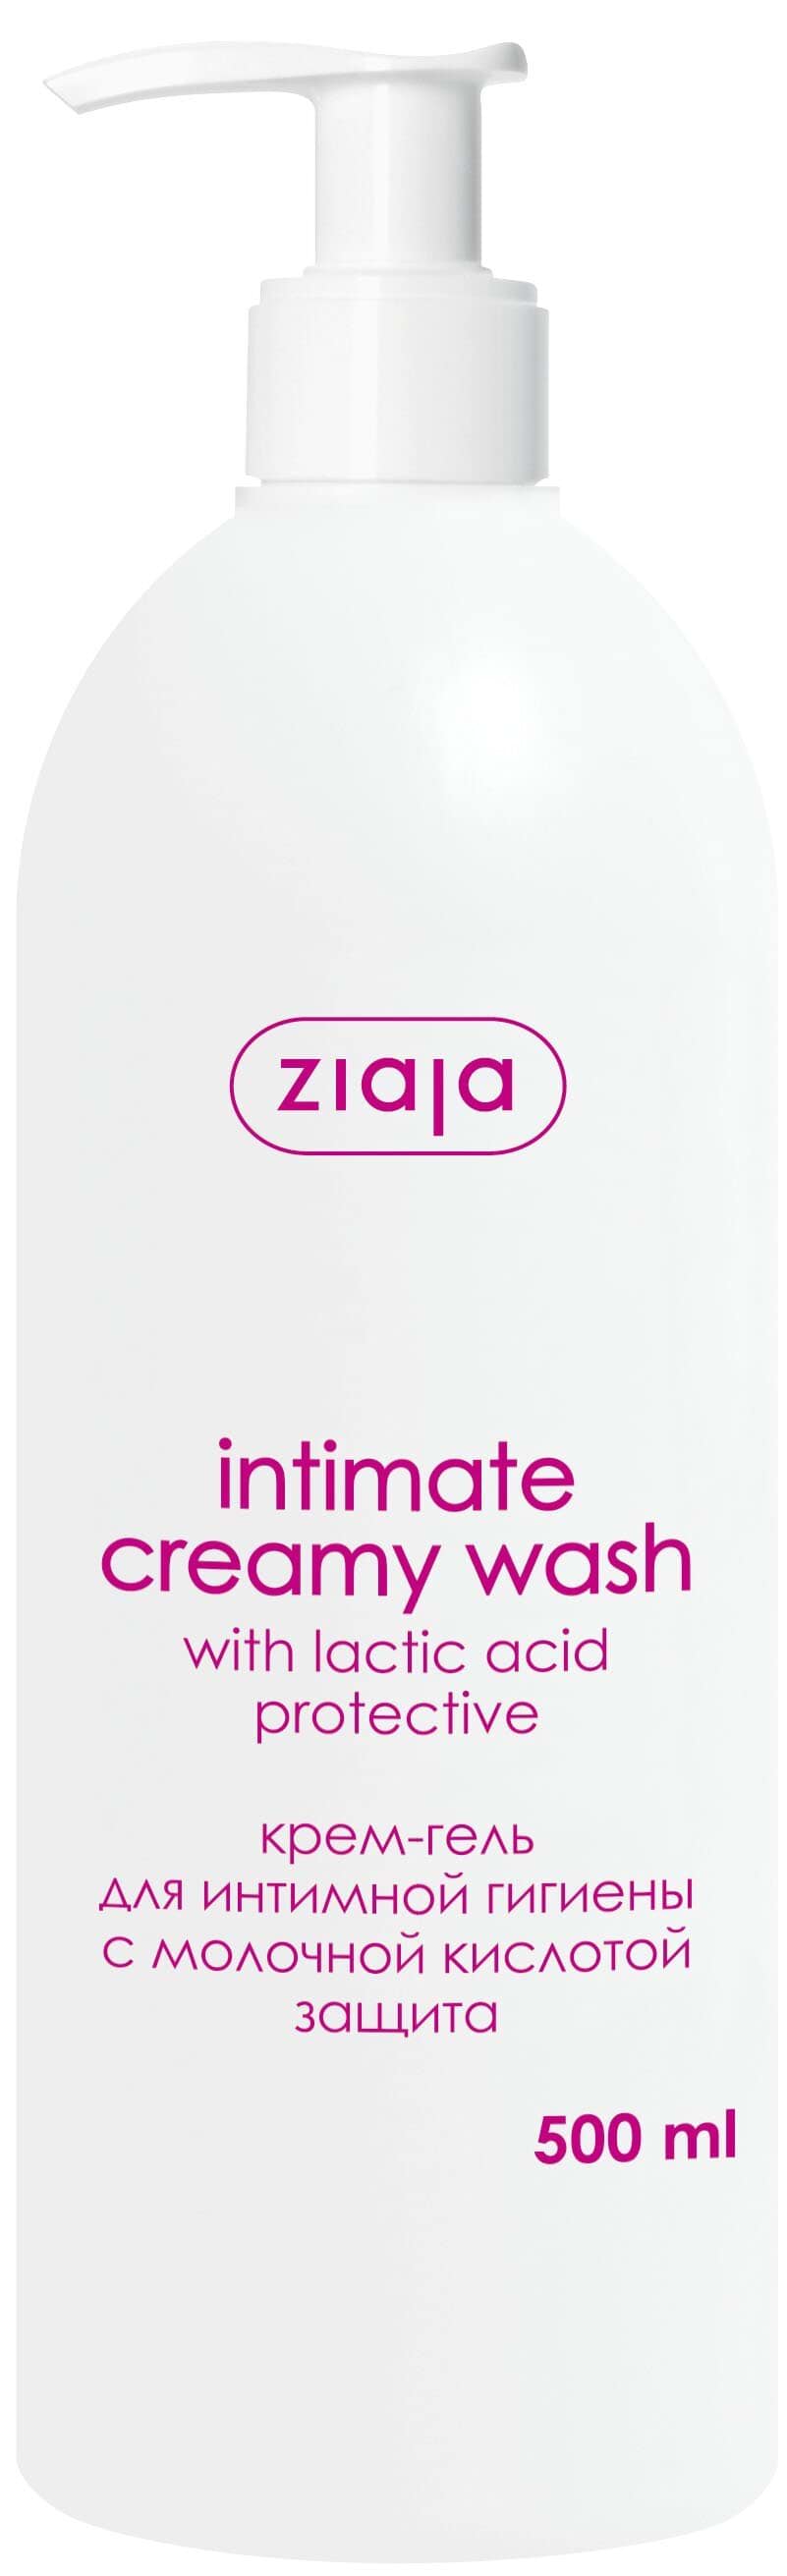 Крем-гель для интимной гигиены Ziaja с молочной кислотой 500мл